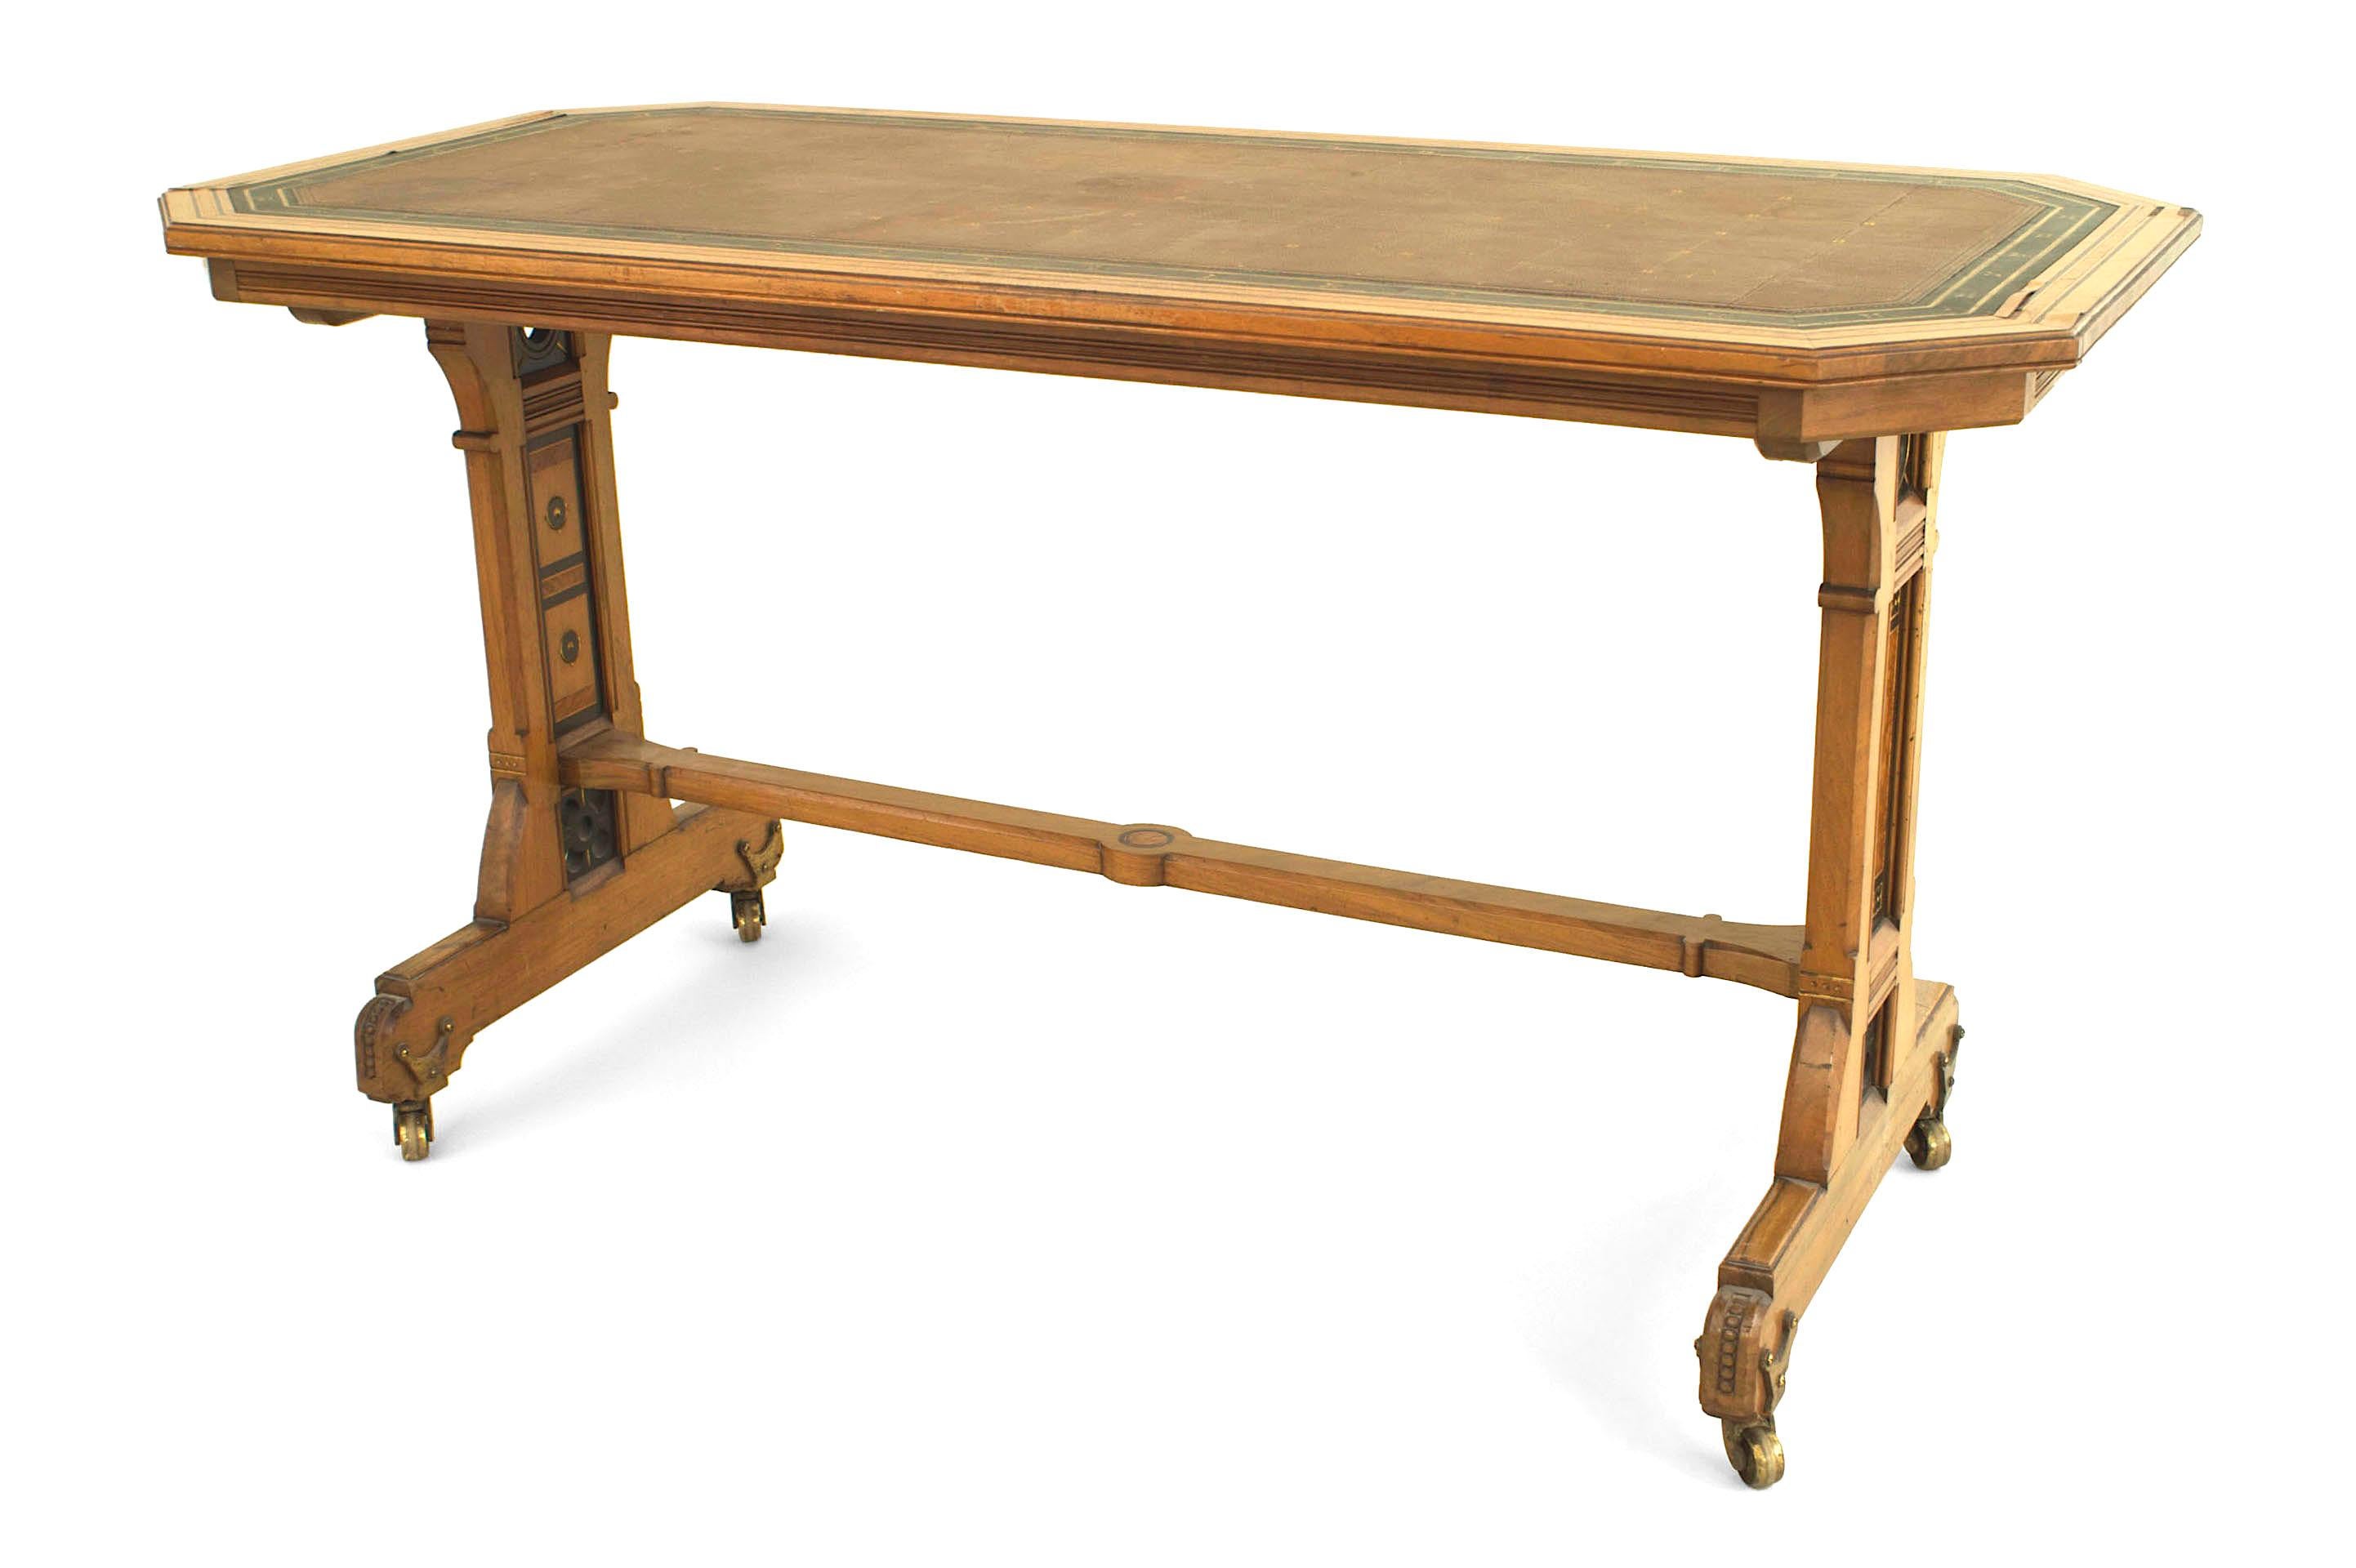 Englischer Arts & Crafts (Aesthetic Movement) Doppelsockeltisch aus Ulmen- und Wurzelholz mit einer schrägen Eckplatte mit Mehrholzeinlage und einer grün-braunen Lederschreibfläche.
    